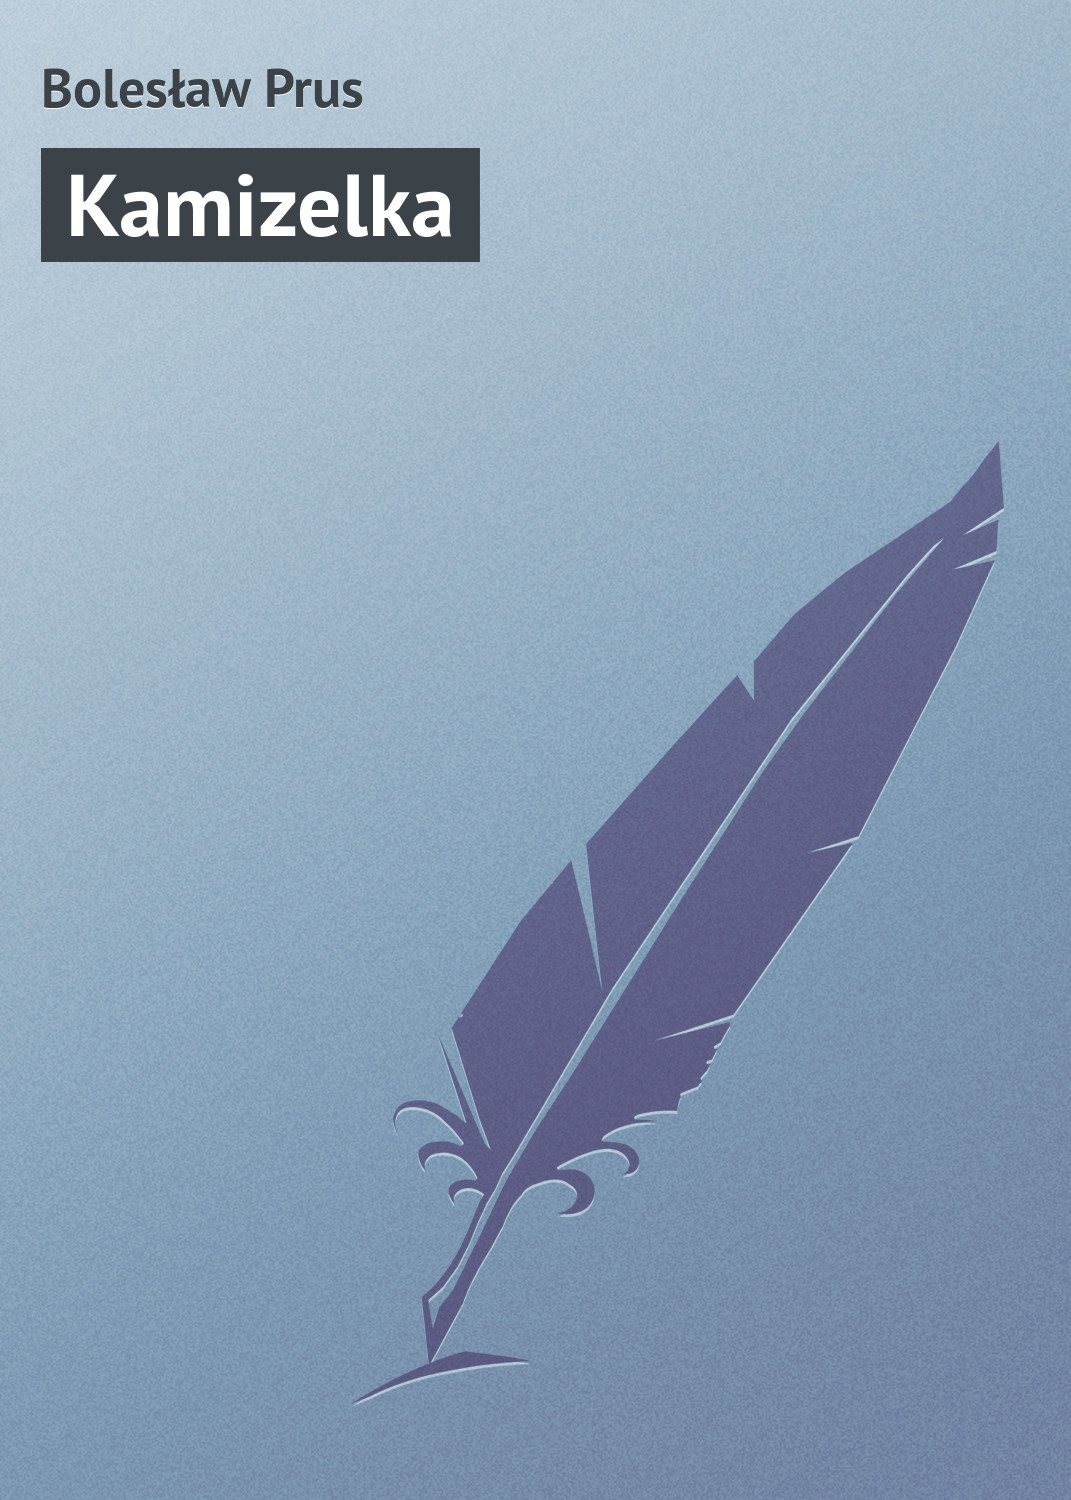 Книга Kamizelka из серии , созданная Bolesław Prus, может относится к жанру Зарубежная старинная литература, Зарубежная классика. Стоимость электронной книги Kamizelka с идентификатором 21105614 составляет 5.99 руб.